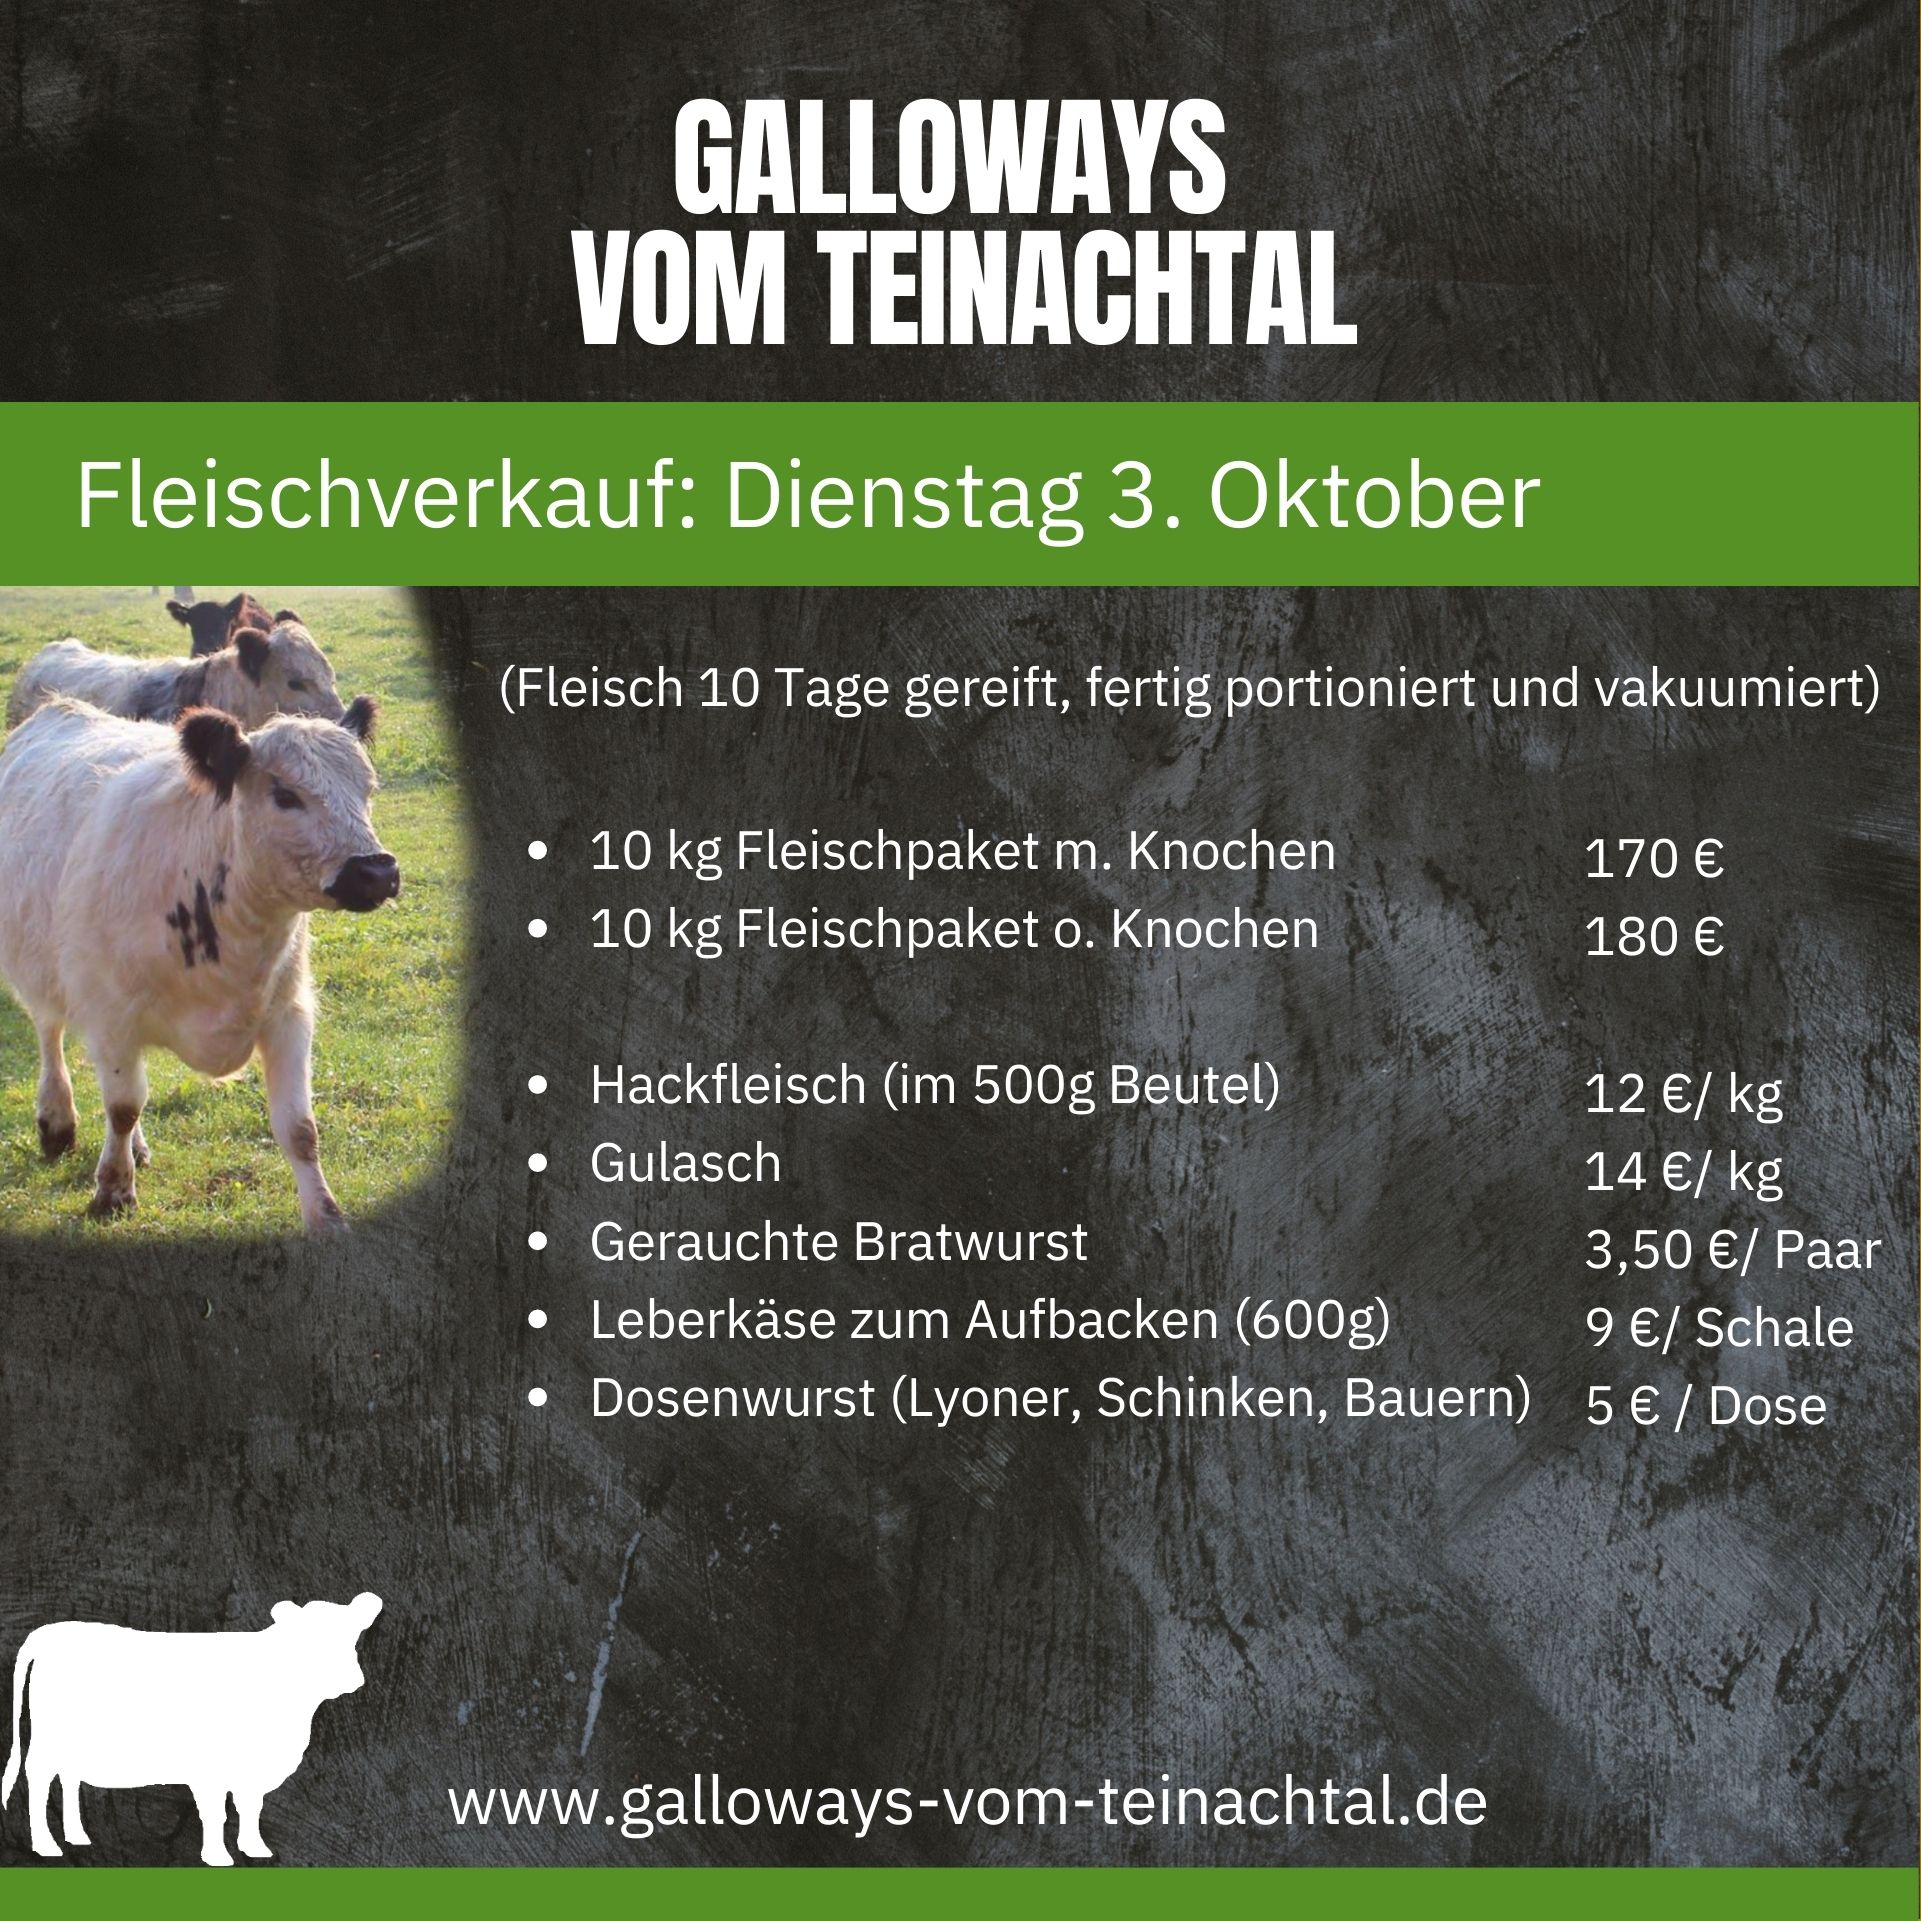 Galloway Fleisch kaufen in Baden-Württemberg, direkt vom Bauern. Regionales Rindfleisch / Galloway-Fleisch